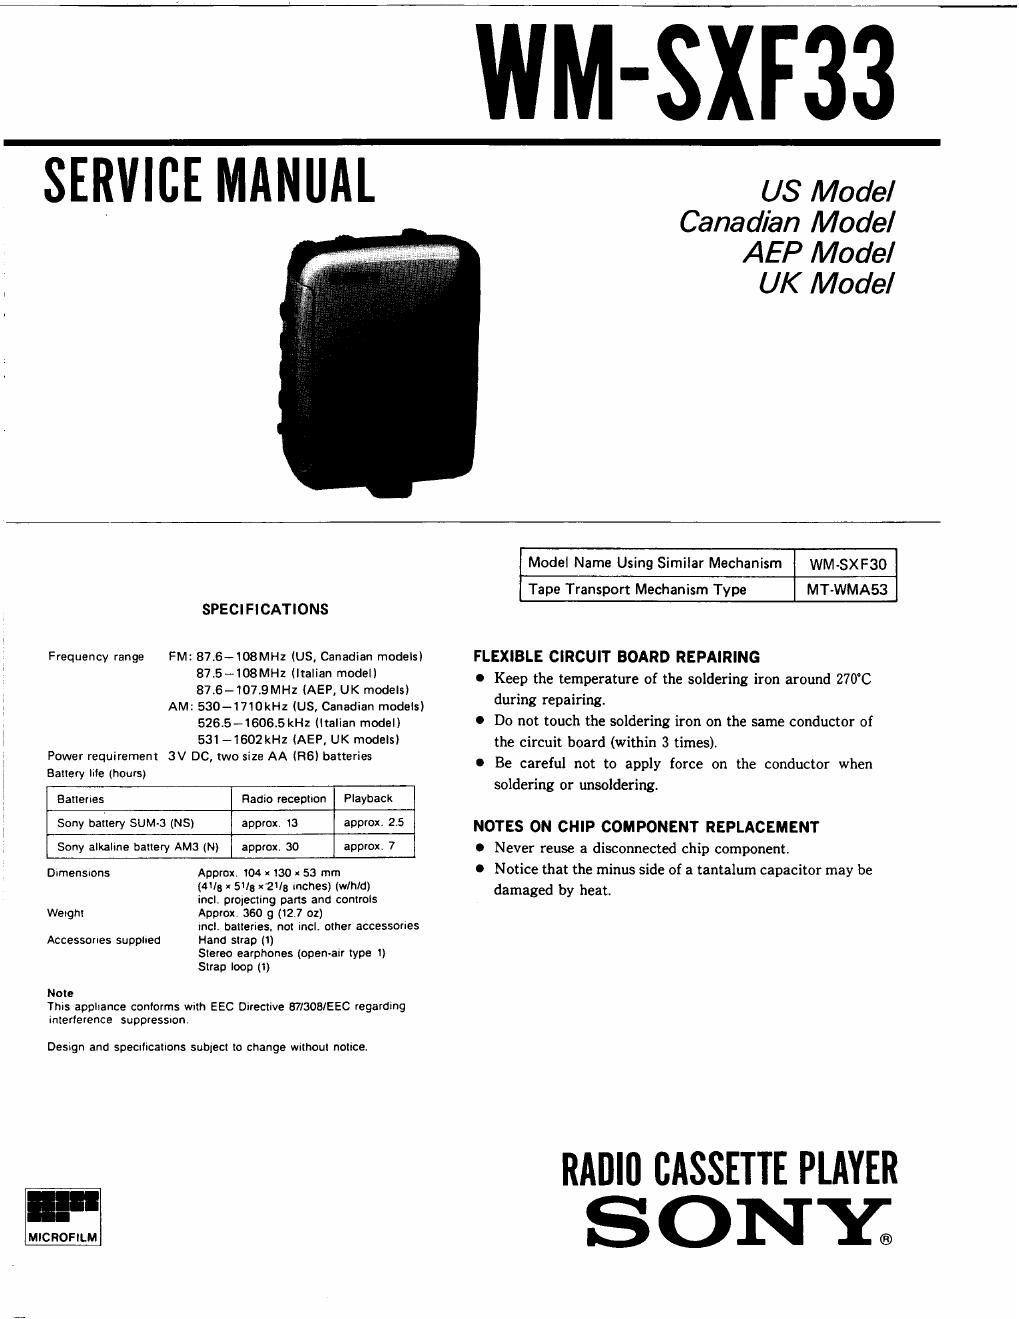 sony wm sxf 33 service manual